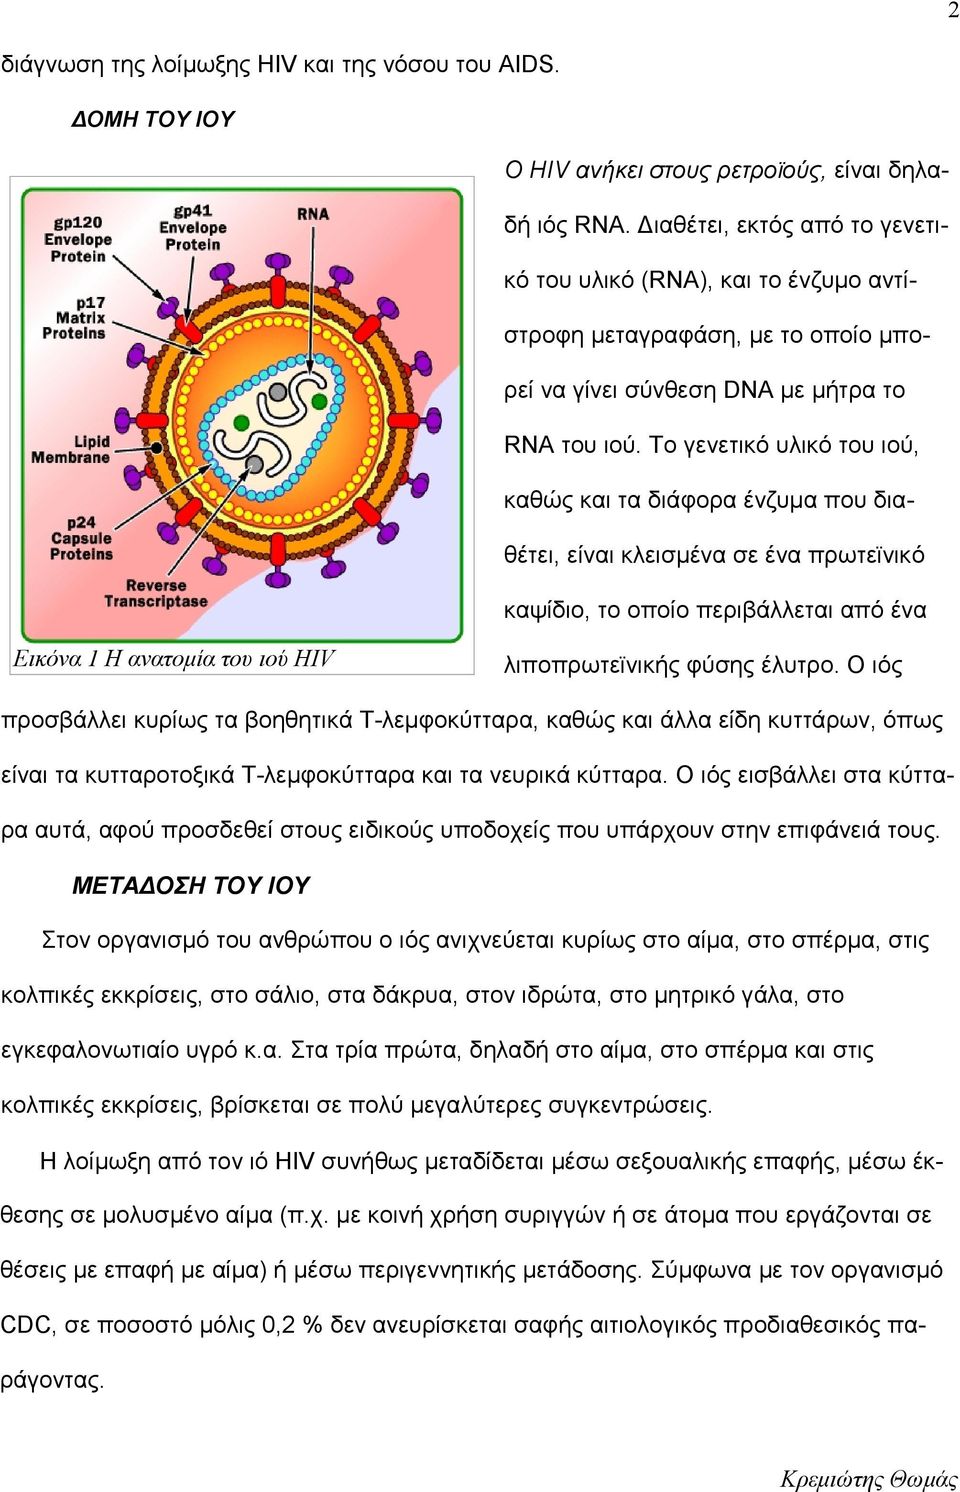 Το γενετικό υλικό του ιού, καθώς και τα διάφορα ένζυμα που διαθέτει, είναι κλεισμένα σε ένα πρωτεϊνικό καψίδιο, το οποίο περιβάλλεται από ένα Εικόνα 1 Η ανατομία του ιού HIV λιποπρωτεϊνικής φύσης